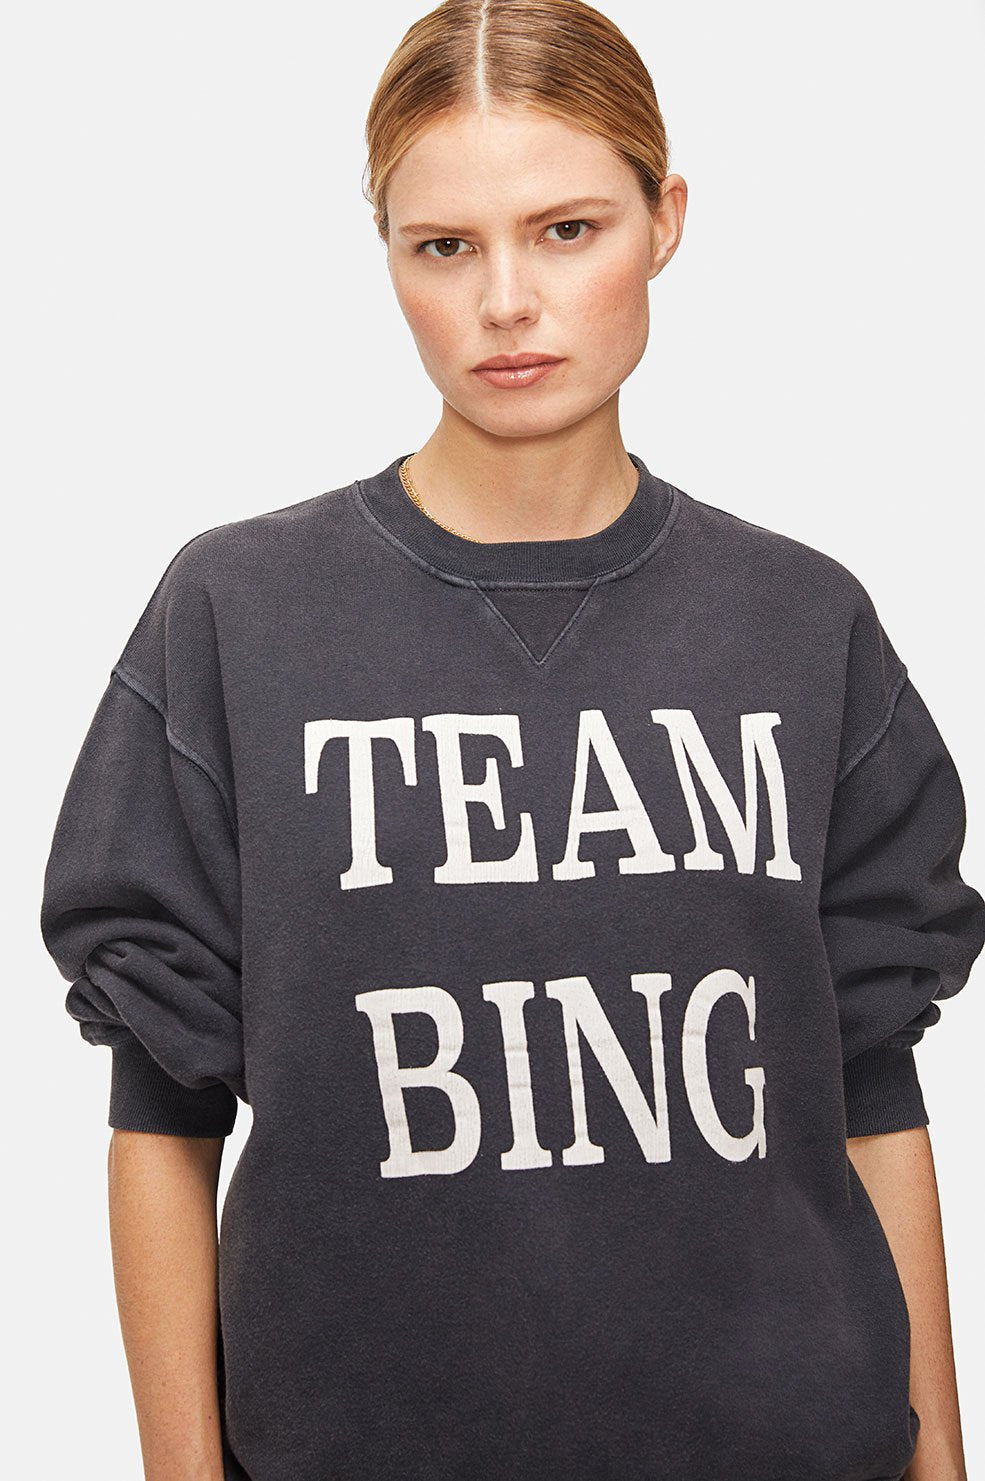 Team Bing Pullover - Black